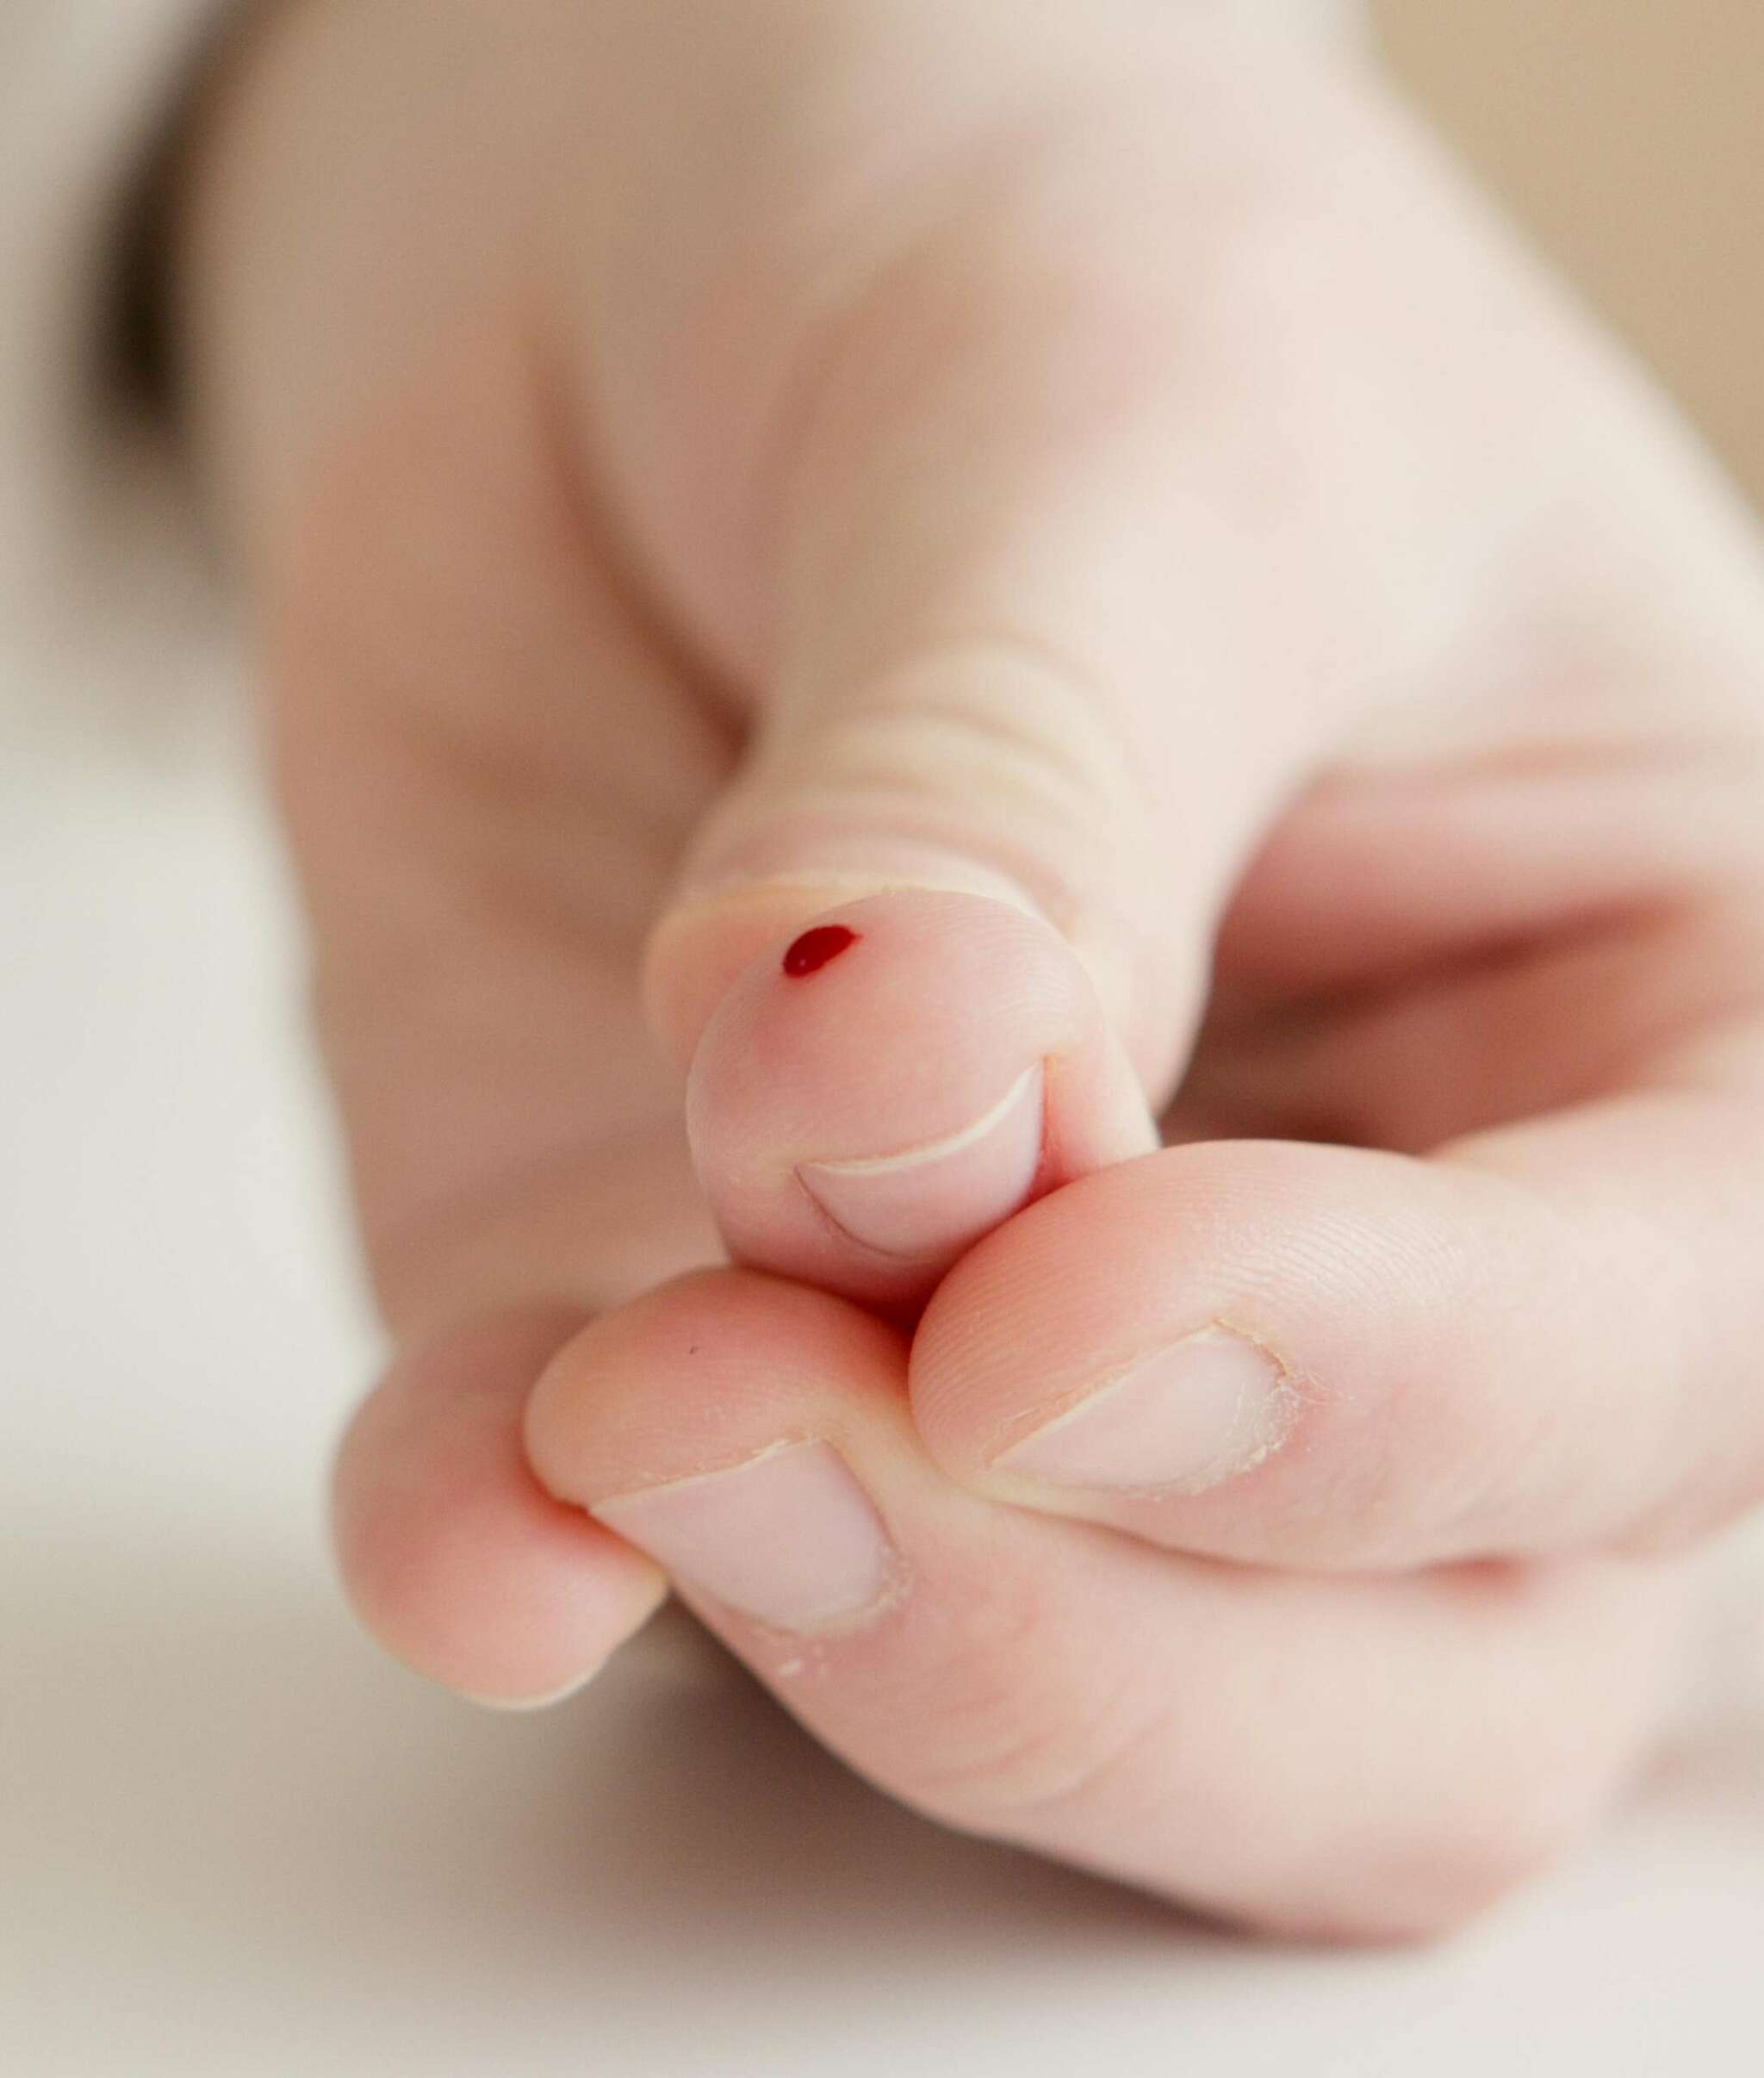 Bluttest über die Fingerkuppe – gänzlich schmerzfrei in der Apotheke